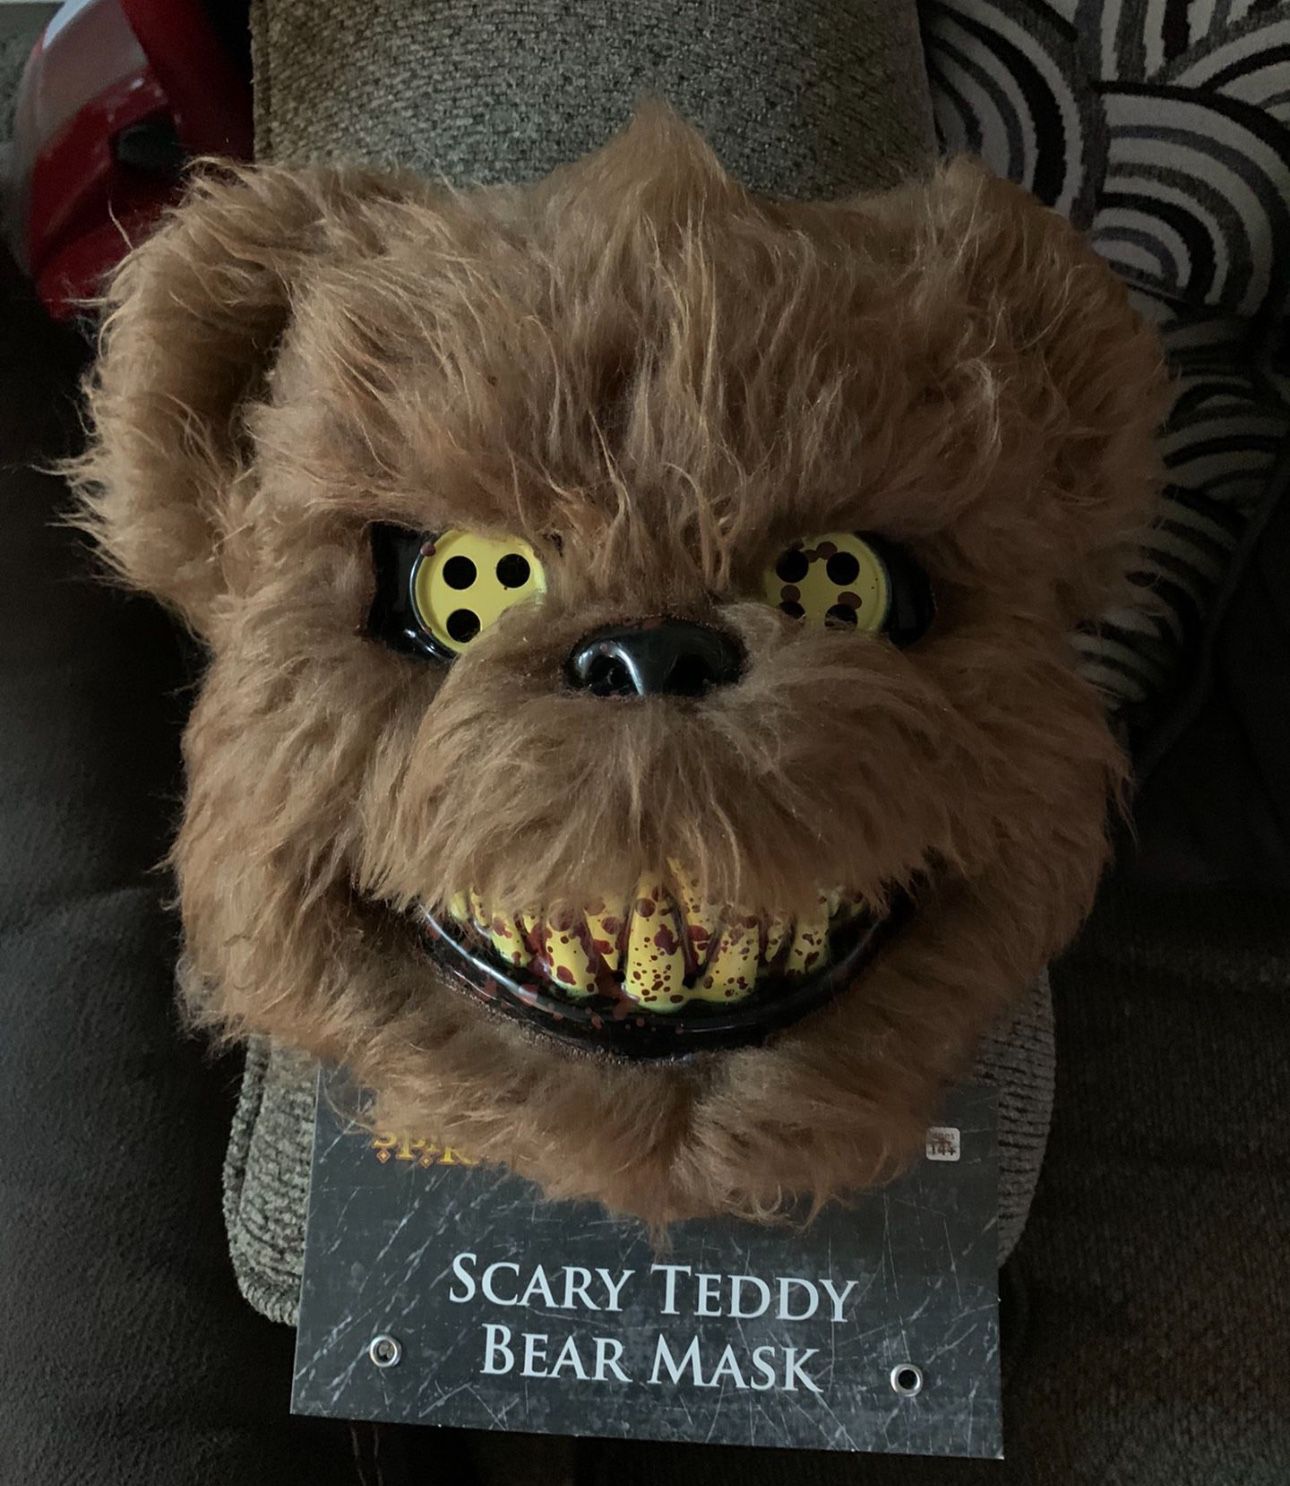 SCARY TEDDY BEAR MASK NEW $10